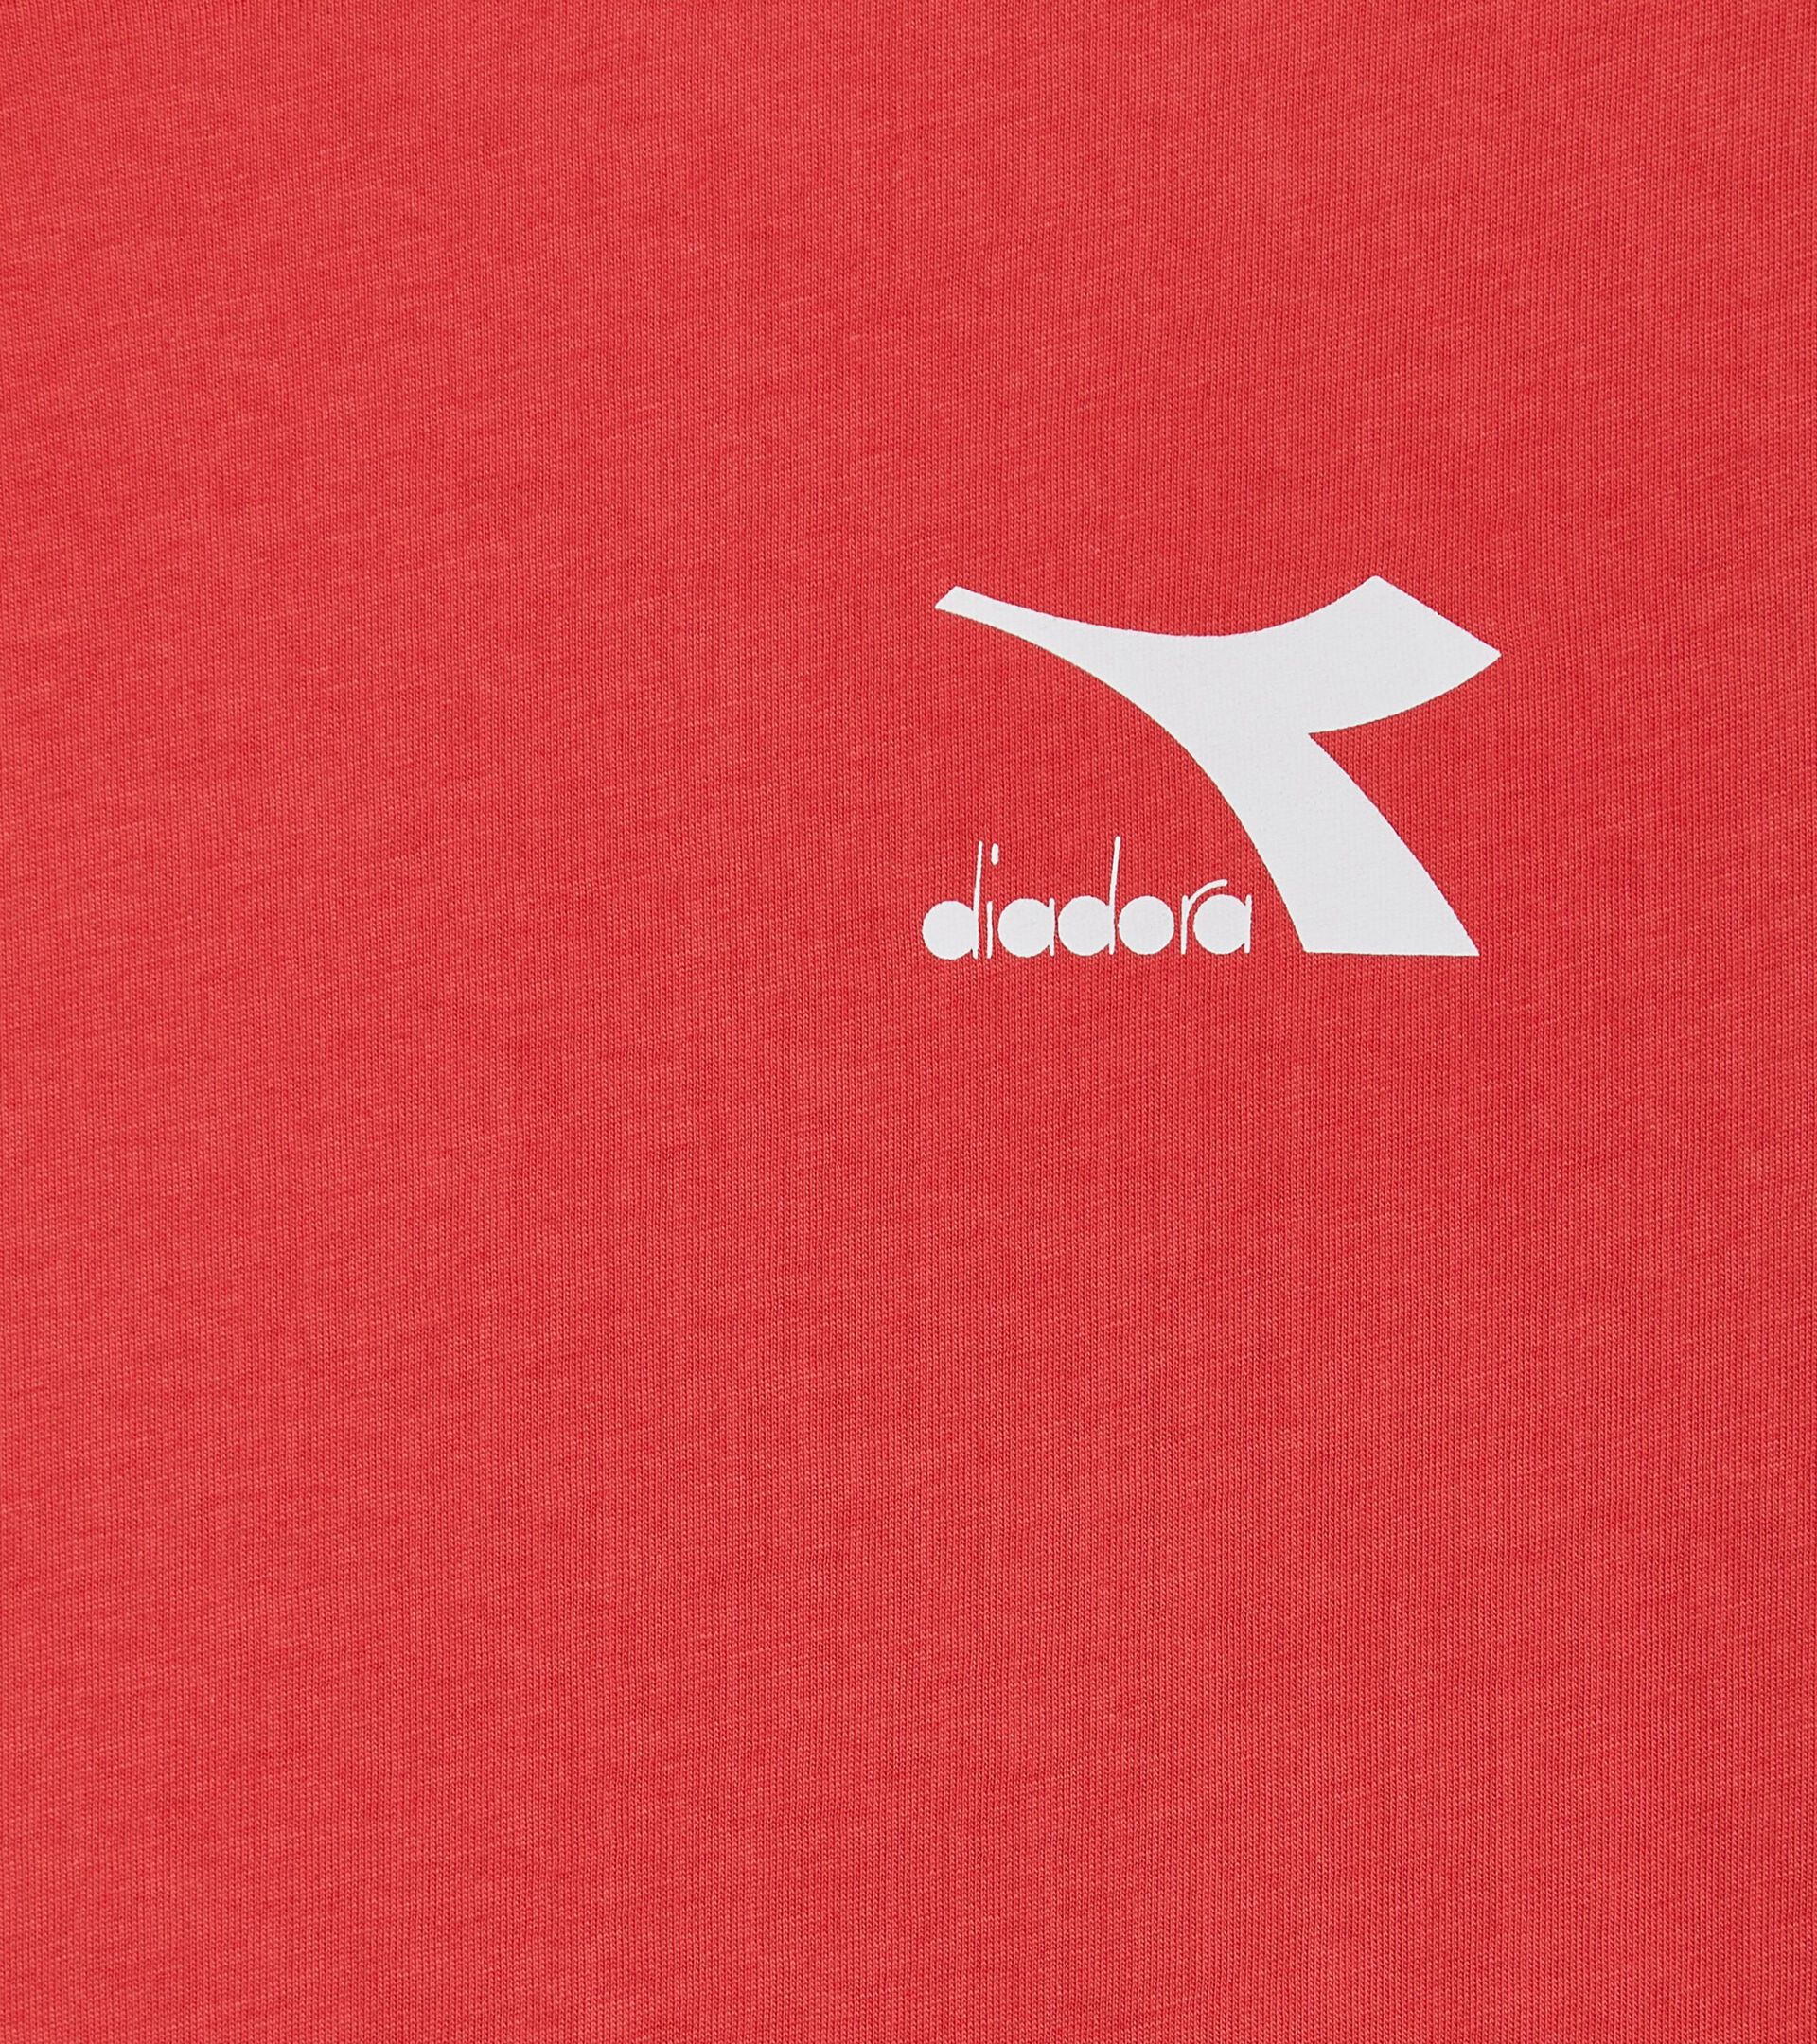 T-shirt de sport - Homme T-SHIRT SS CORE ROUGE CAYENNE - Diadora